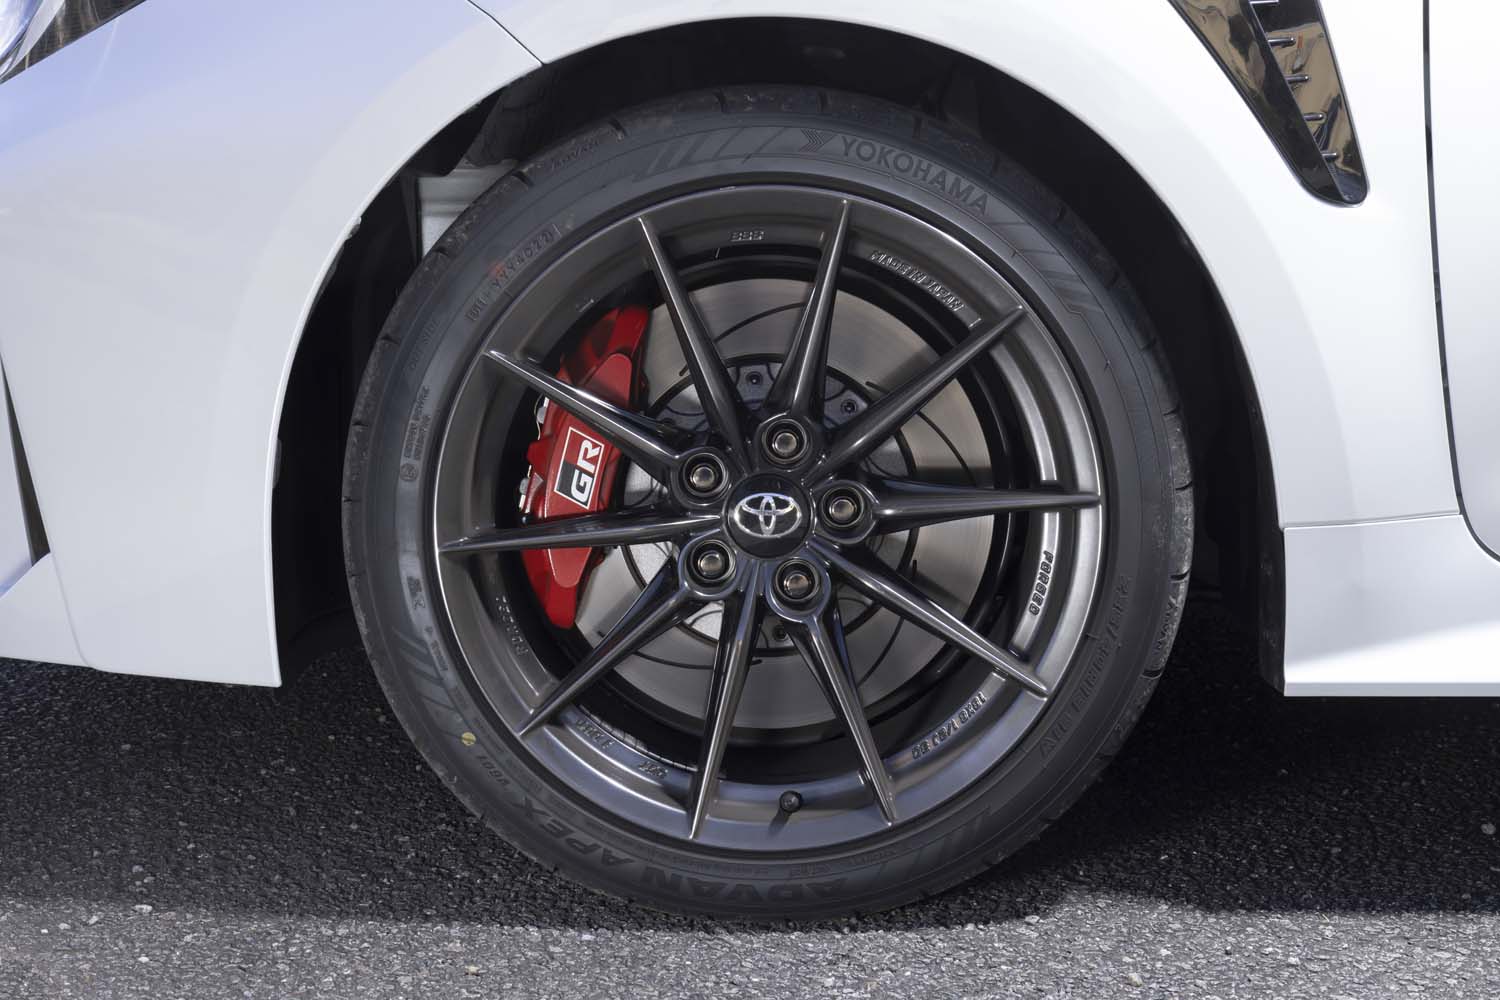 タイヤサイズは235/40R18で、銘柄は「ヨコハマ・アドバン エイペックスV601」。エイペックスV601は北米などを中心に展開されている新しいスポーツタイヤブランドで、日本には今後本格的に導入されるという。